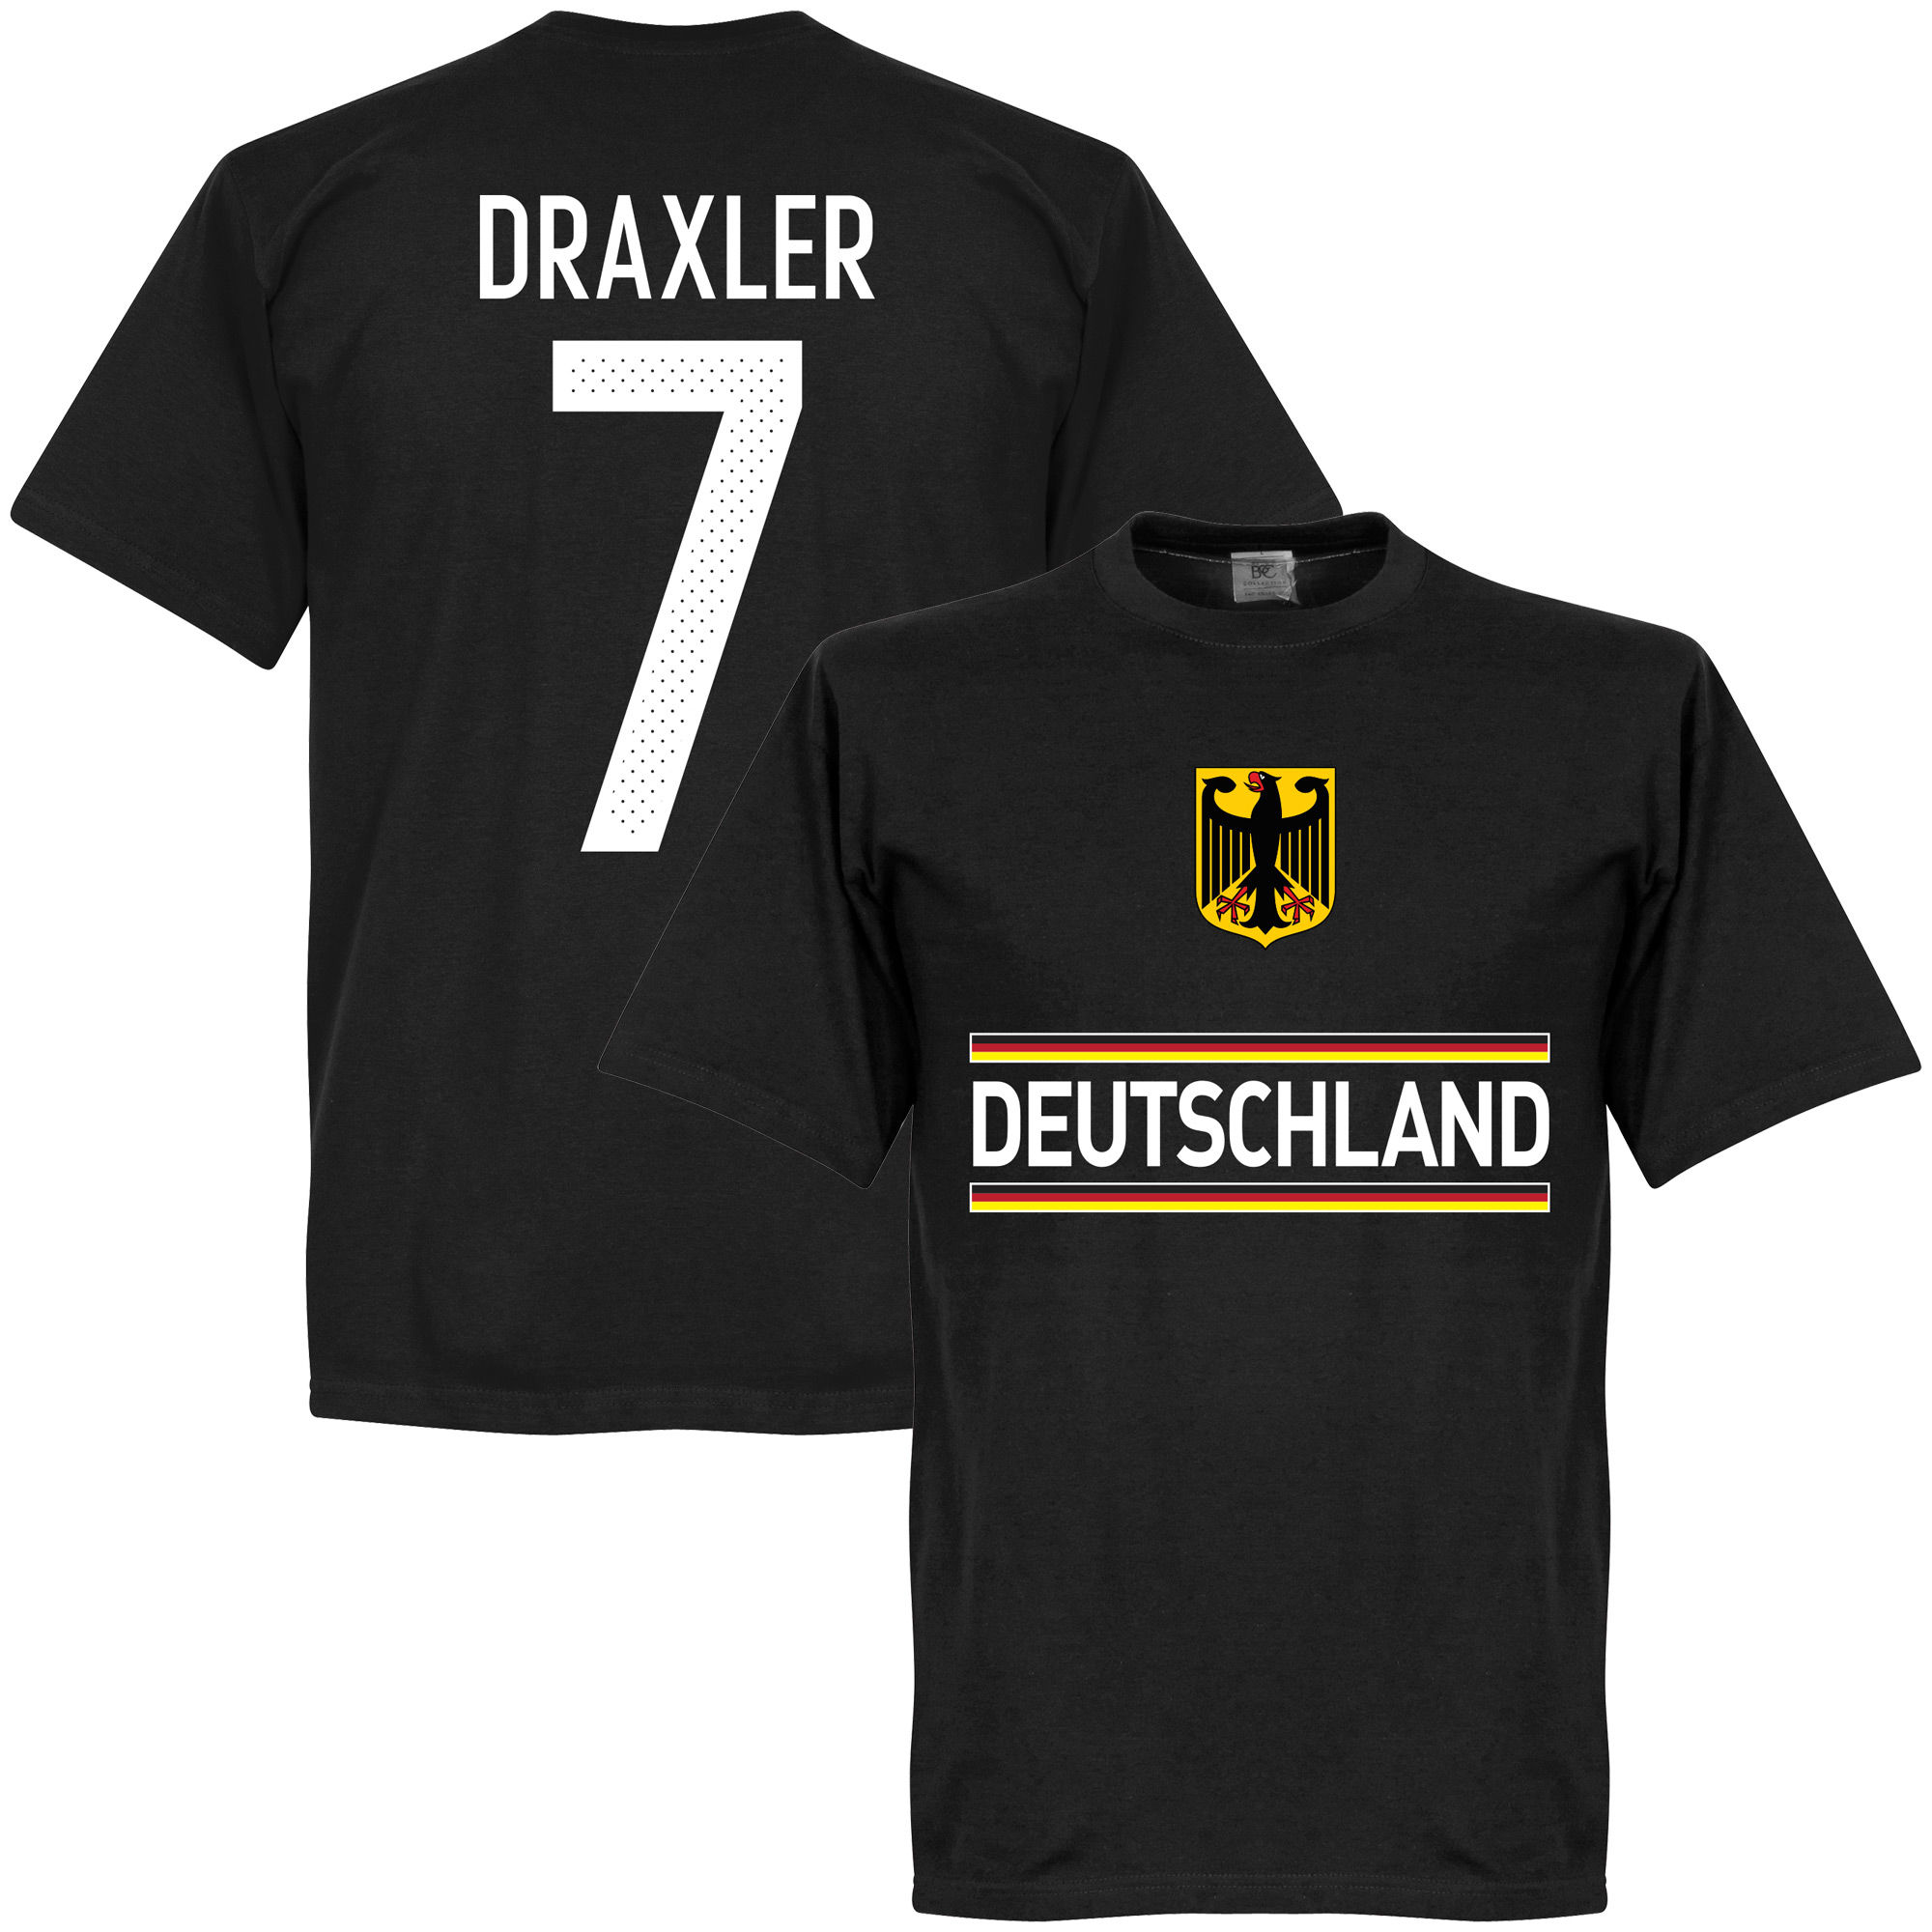 Německo - Tričko - číslo 7, Julian Draxler, černé